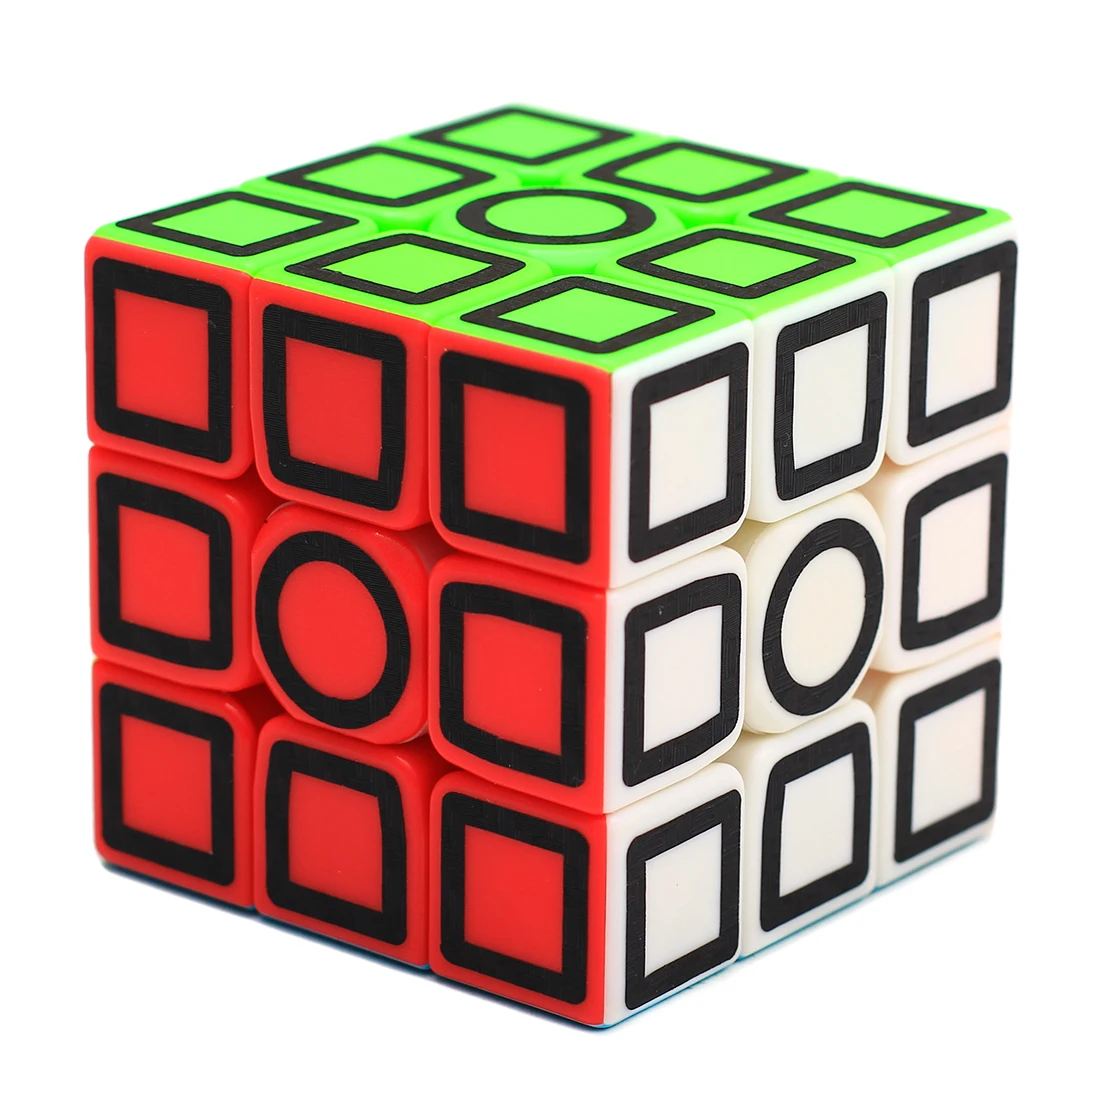 2019 Новое поступление Surwish Zcube 3x3x3 магический куб из углеродного волокна, игрушка-головоломка для обучения мозгу